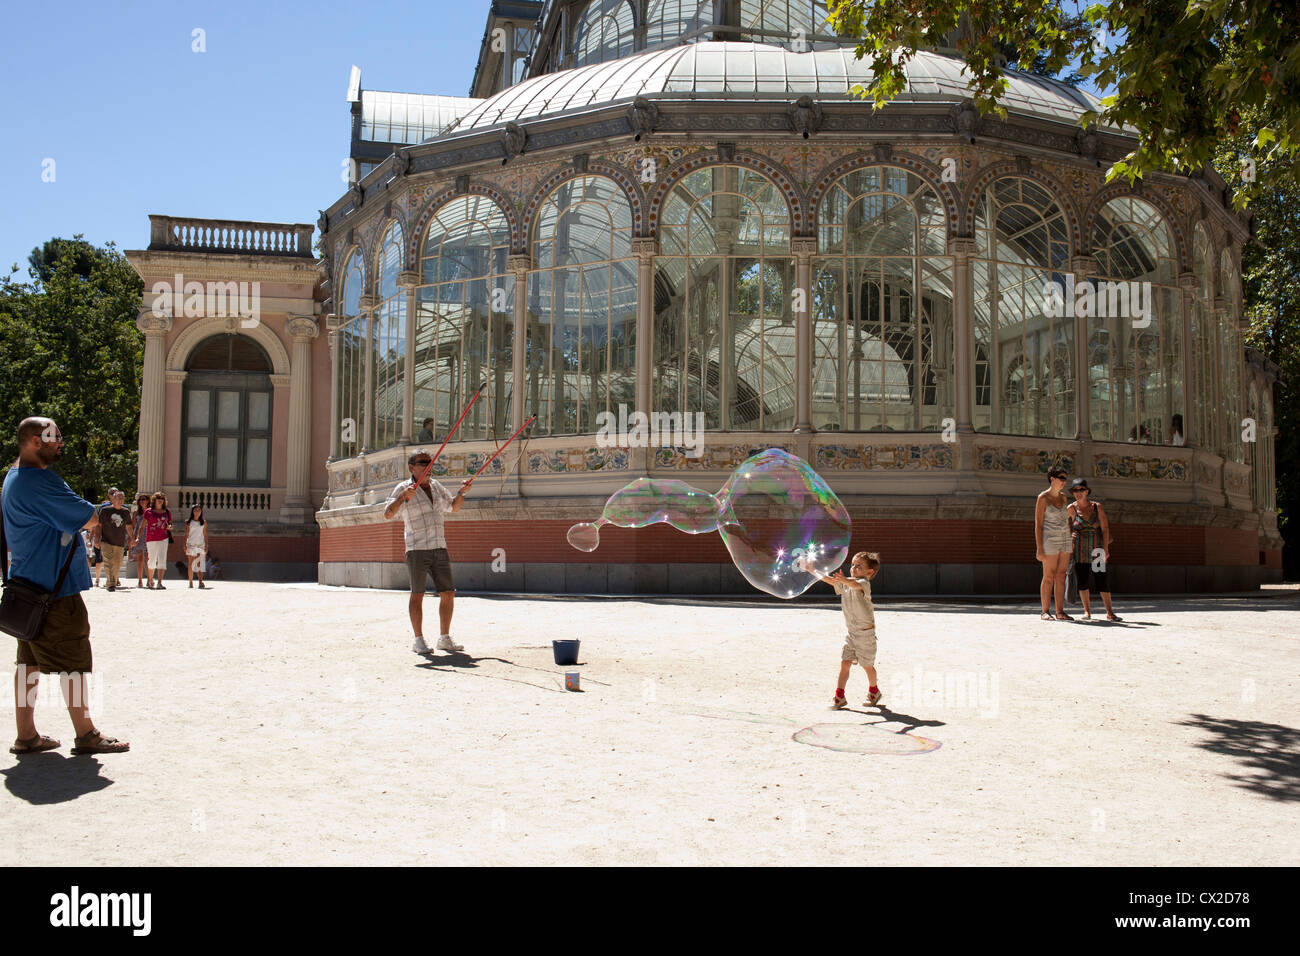 Un ragazzo cerca per far scoppiare una bolla di sapone al di fuori del Palacio de Cristal nel Parco del Retiro di Madrid, Spagna. Foto Stock